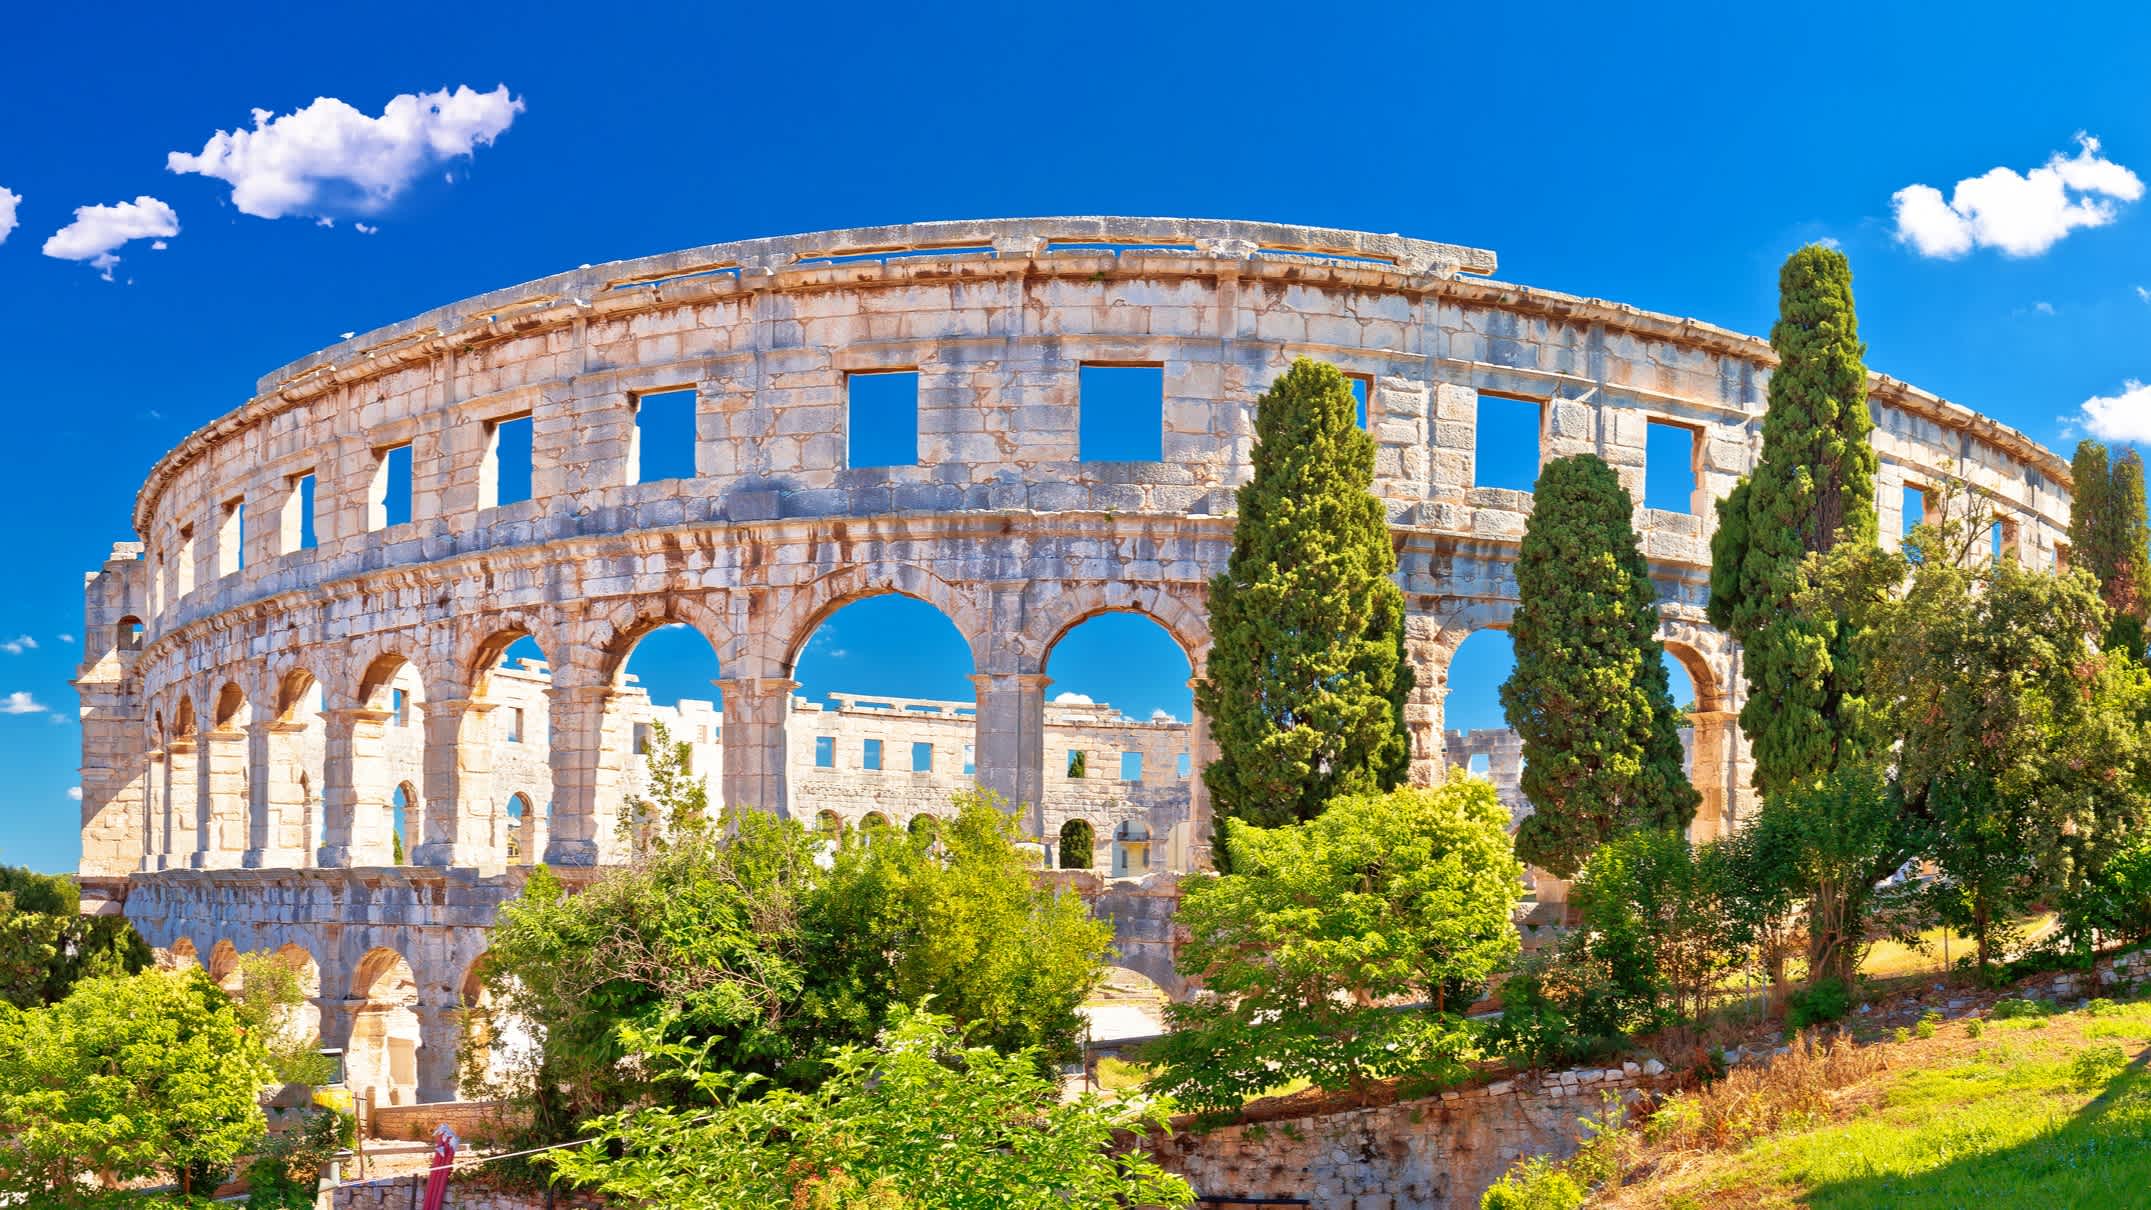 Römische Amphitheater in Pula, Region Istrien, Kroatien